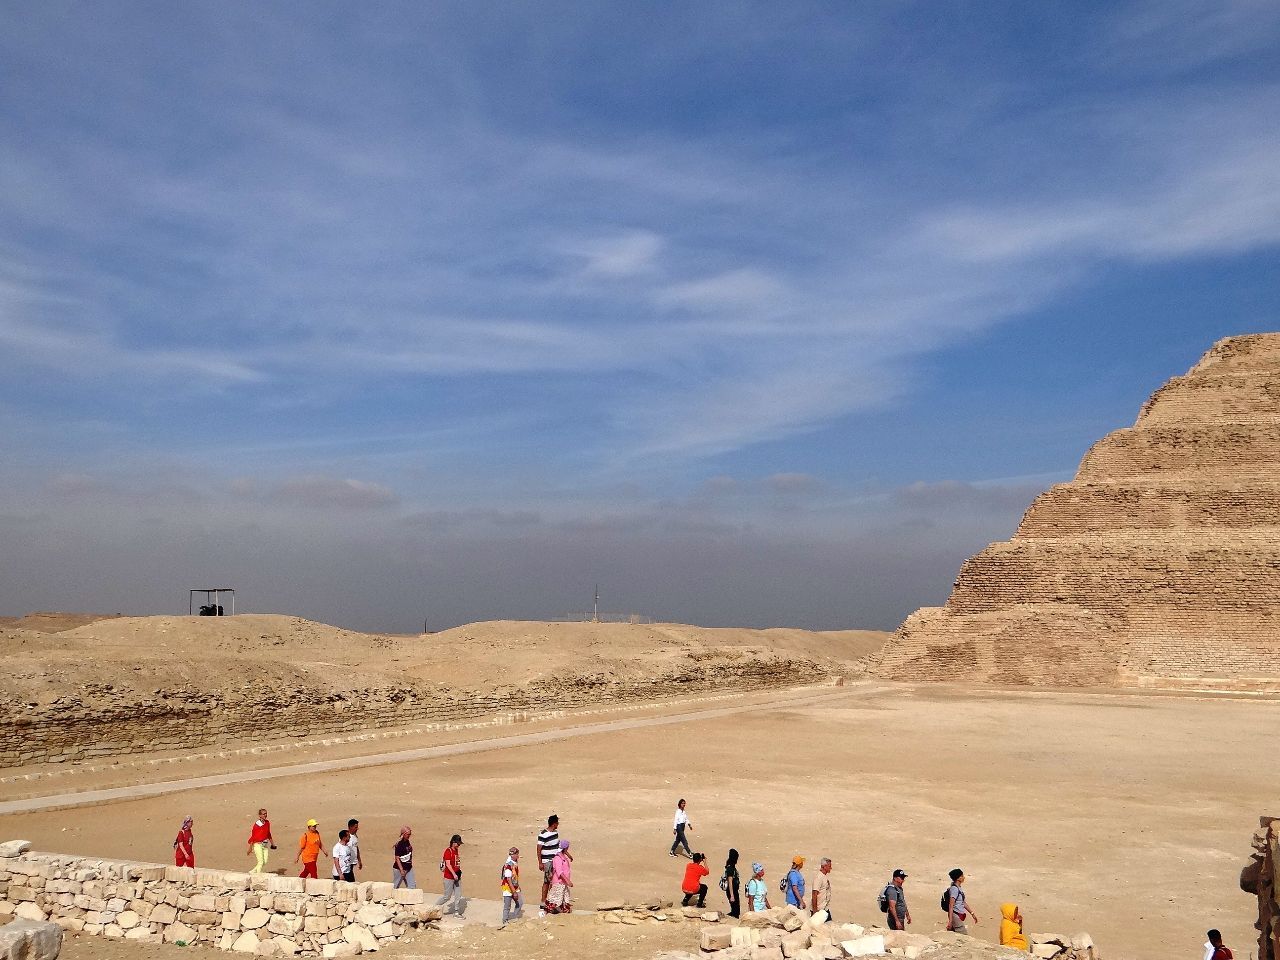 Египет Часть 4. Саккара. Пирамида Джессера, пирамида Униса, Серапиум.